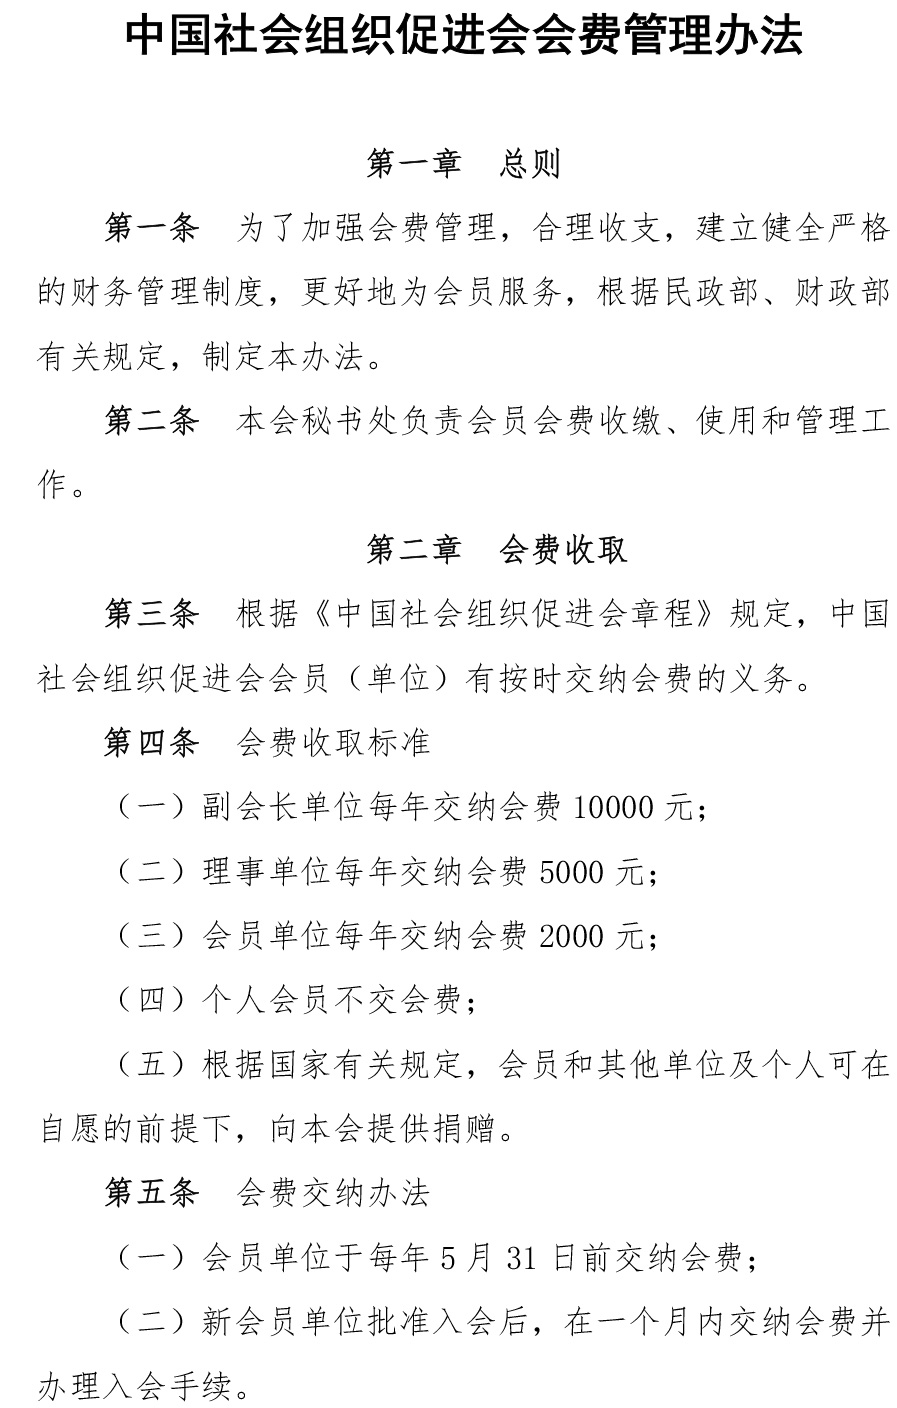 中国社会组织促进会会费管理办法-1.jpg